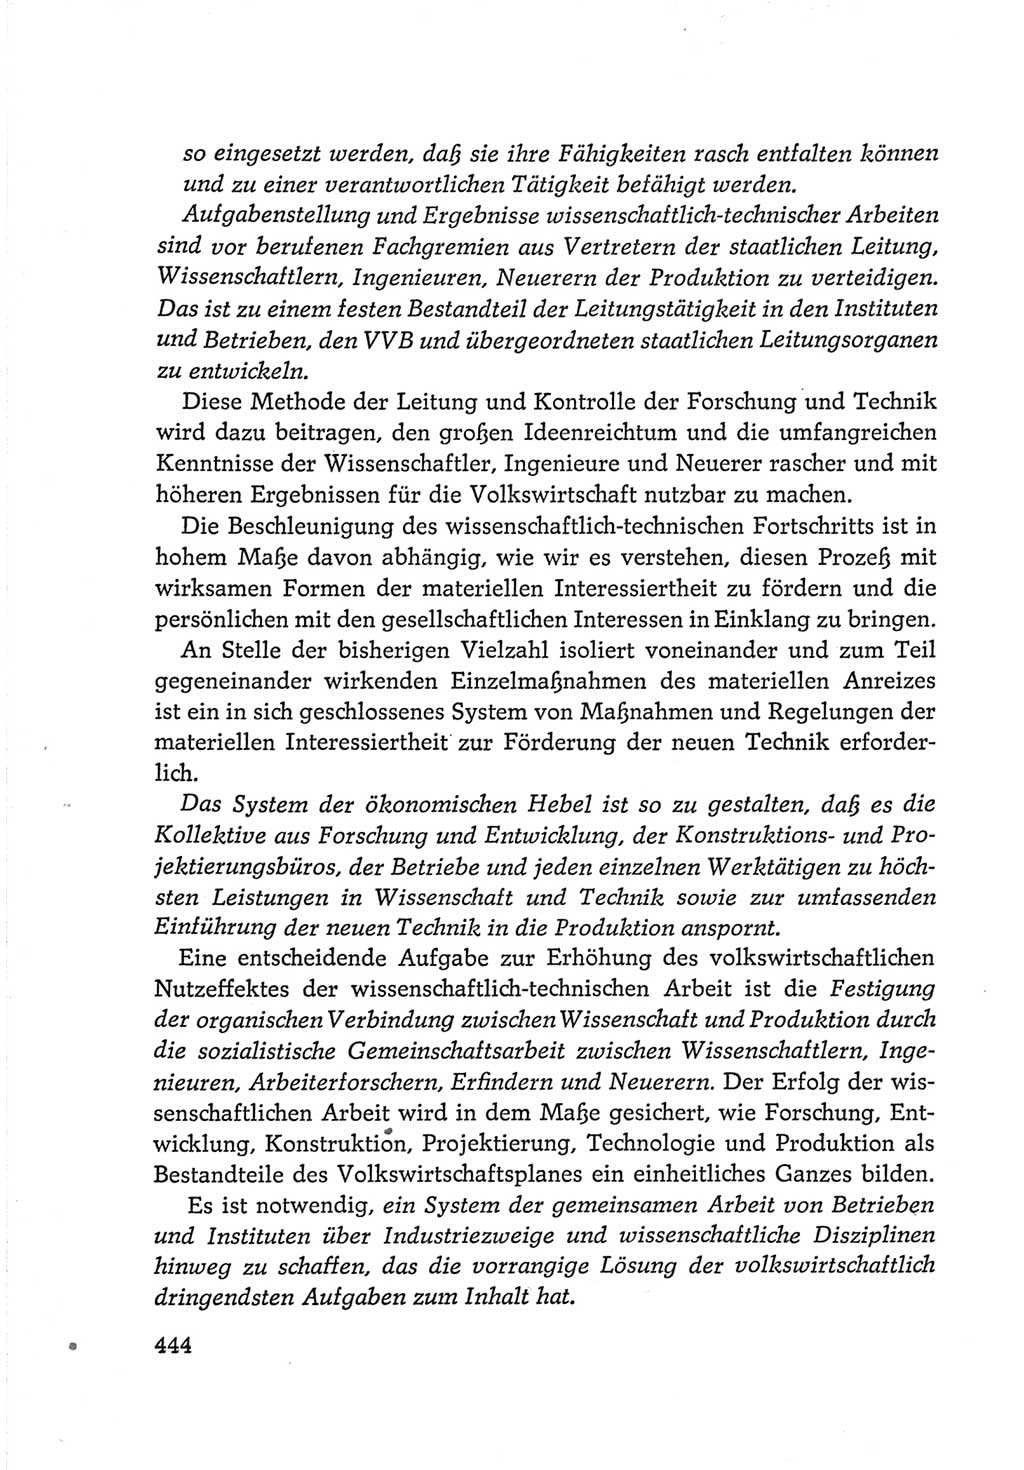 Protokoll der Verhandlungen des Ⅵ. Parteitages der Sozialistischen Einheitspartei Deutschlands (SED) [Deutsche Demokratische Republik (DDR)] 1963, Band Ⅳ, Seite 444 (Prot. Verh. Ⅵ. PT SED DDR 1963, Bd. Ⅳ, S. 444)